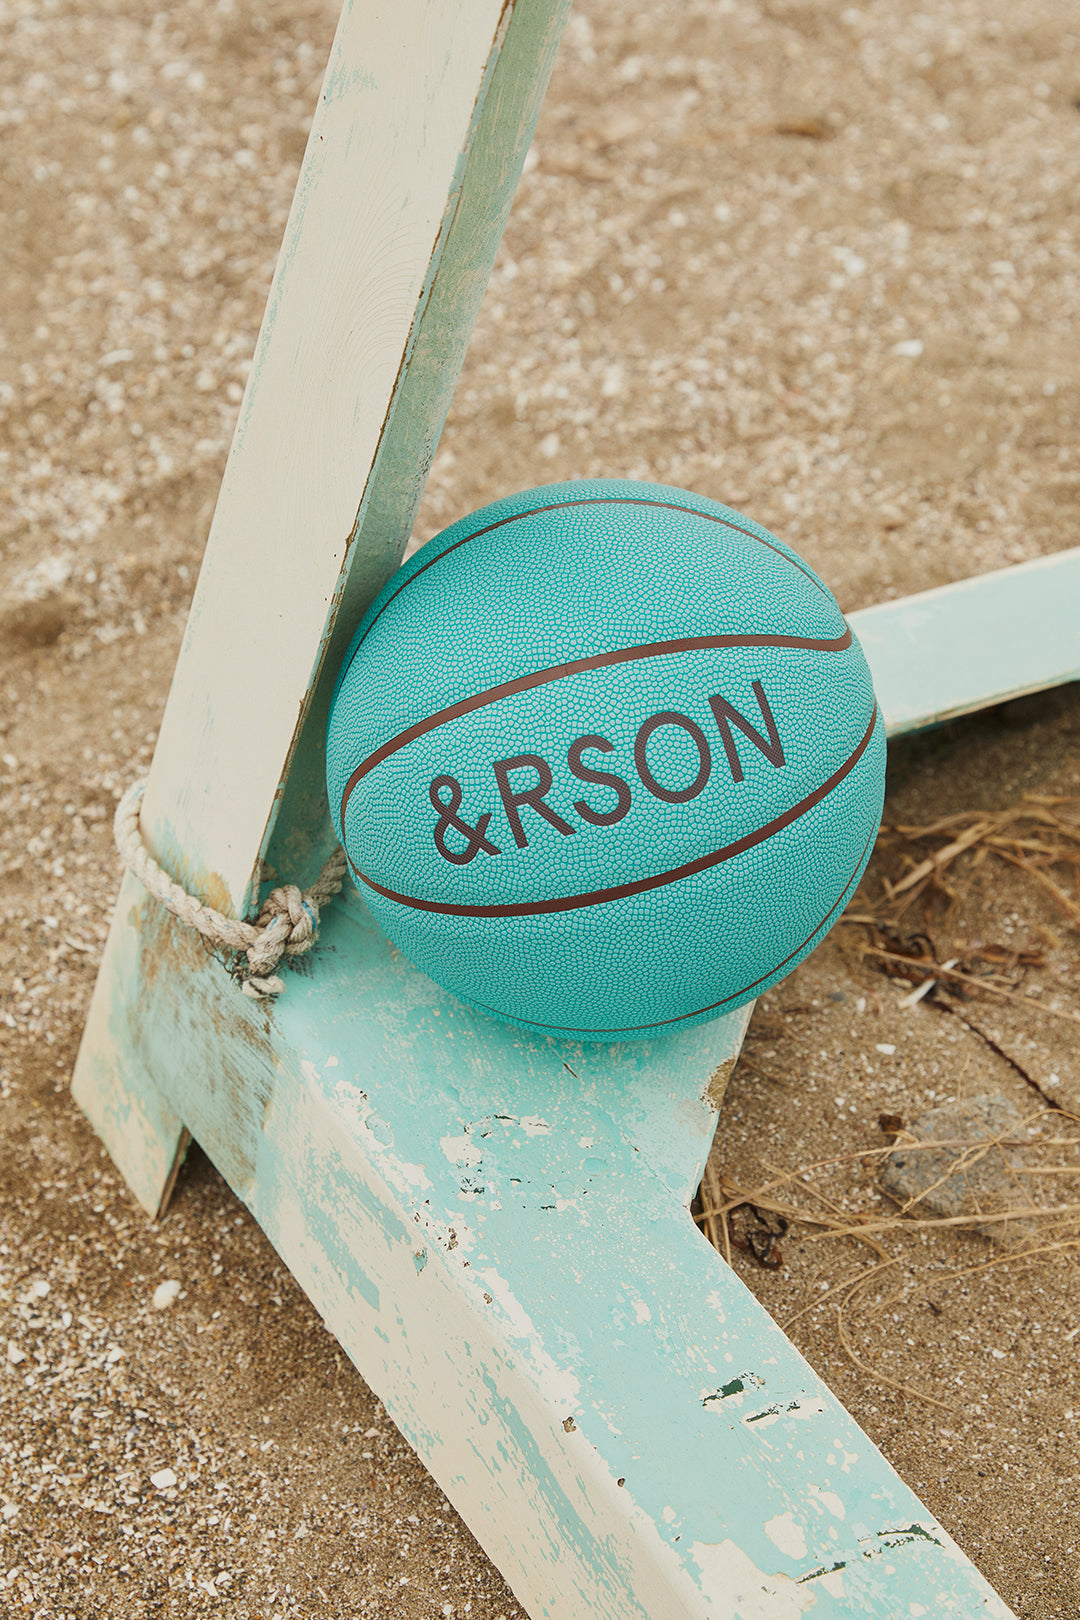 &rson アンダーソン ともやん ボール 第一弾 - バスケットボール